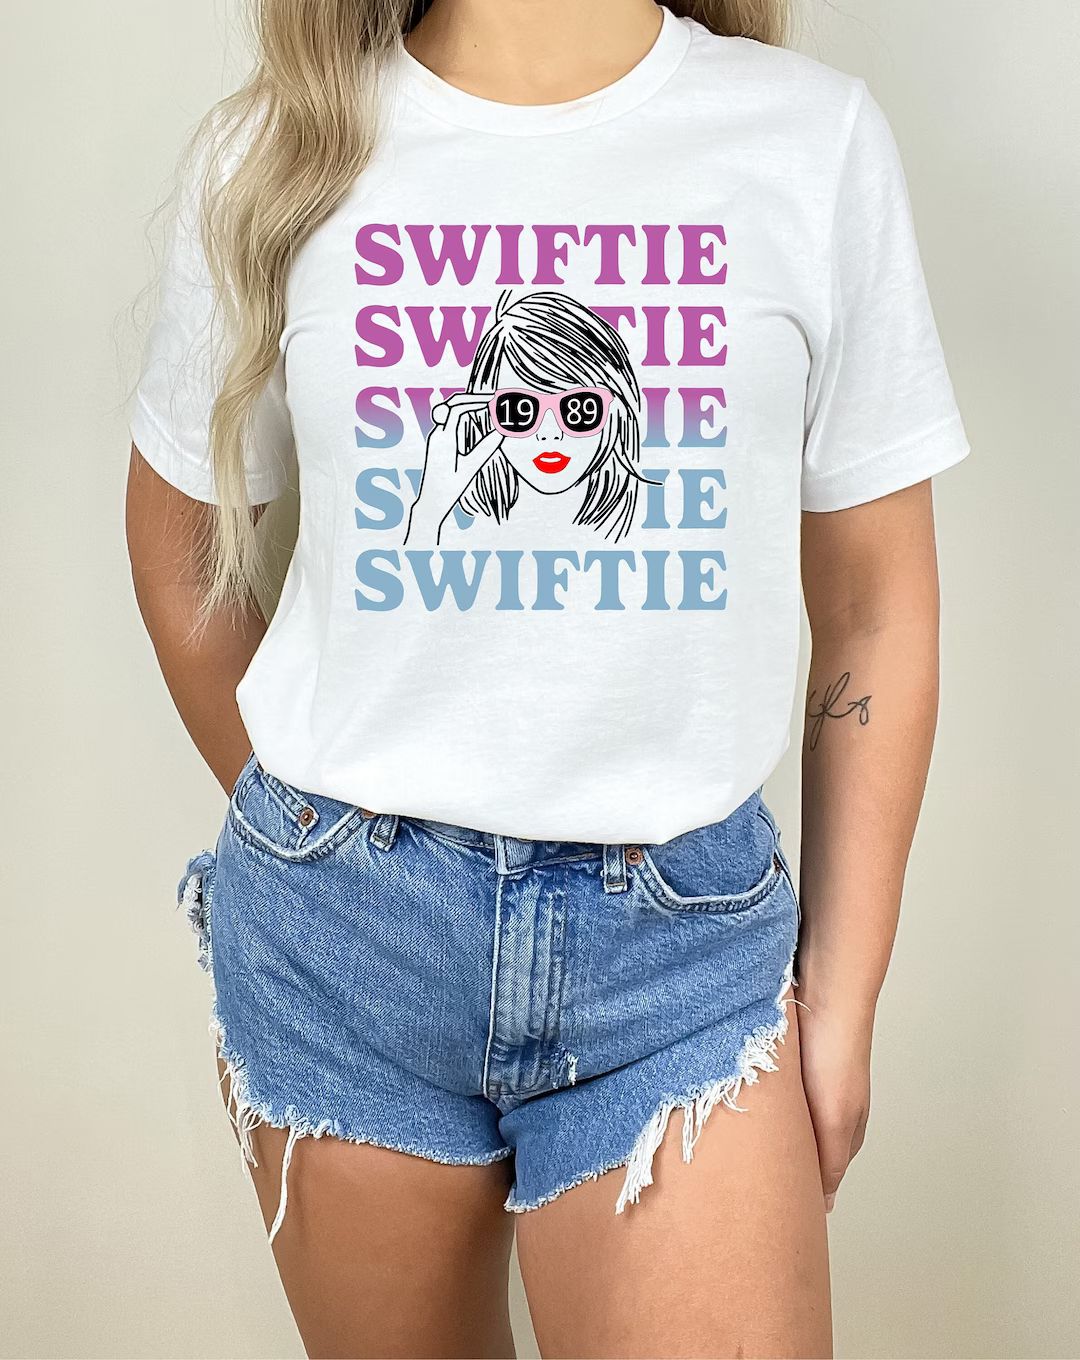 Swiftie T-shirt, Retro Swiftie Outfits, Swiftian Shirt, Swiftie Merch Shirt, Eras Concert T Shirt... | Etsy (US)